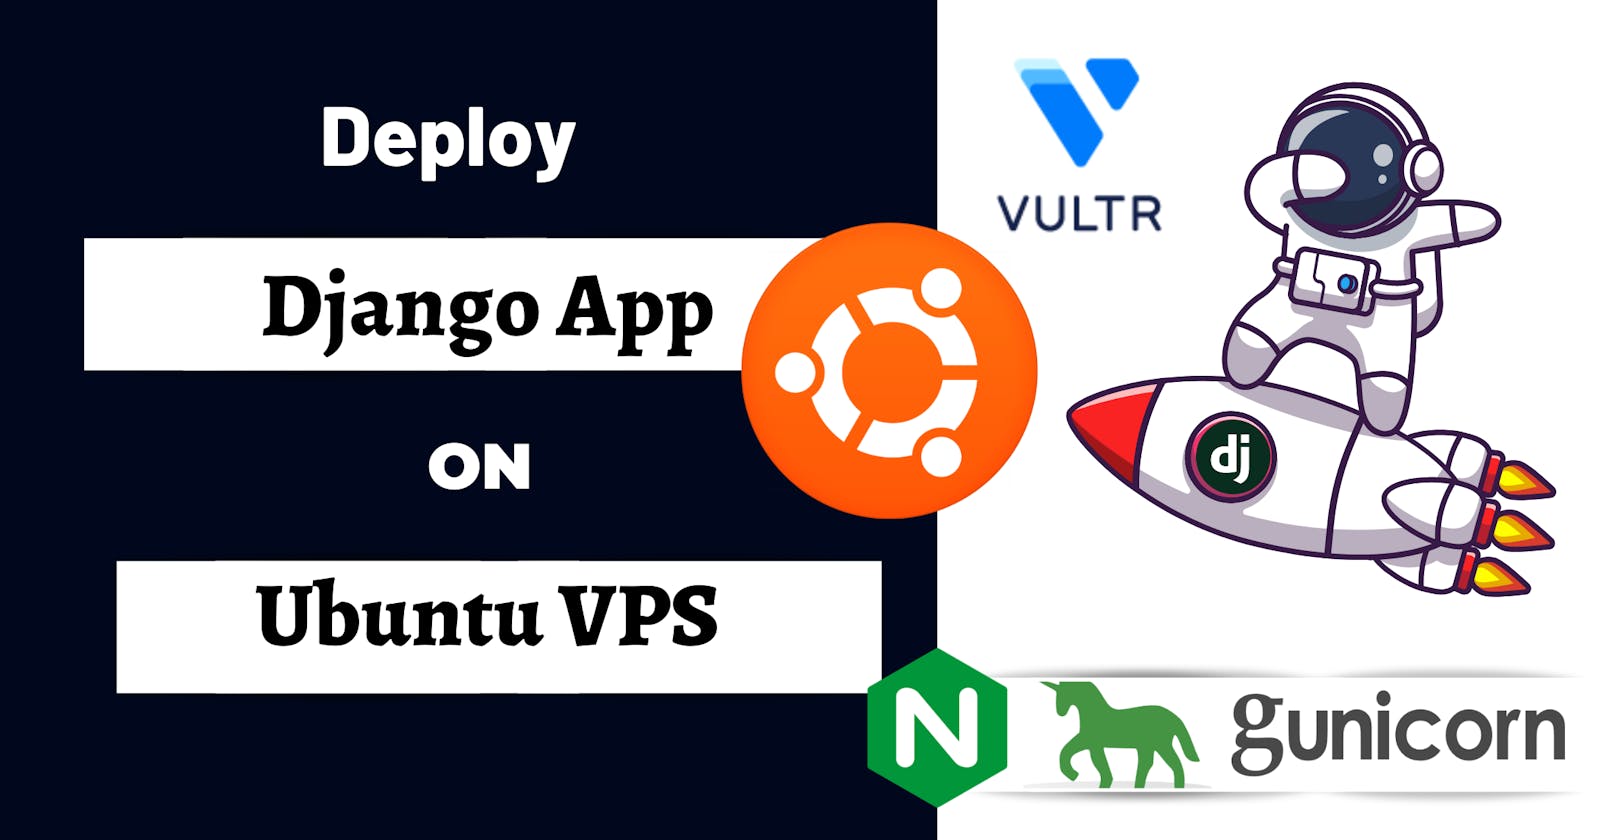 Deploy Django App over Ubuntu VPS with Gunicorn + Nginix + PostgreSQL